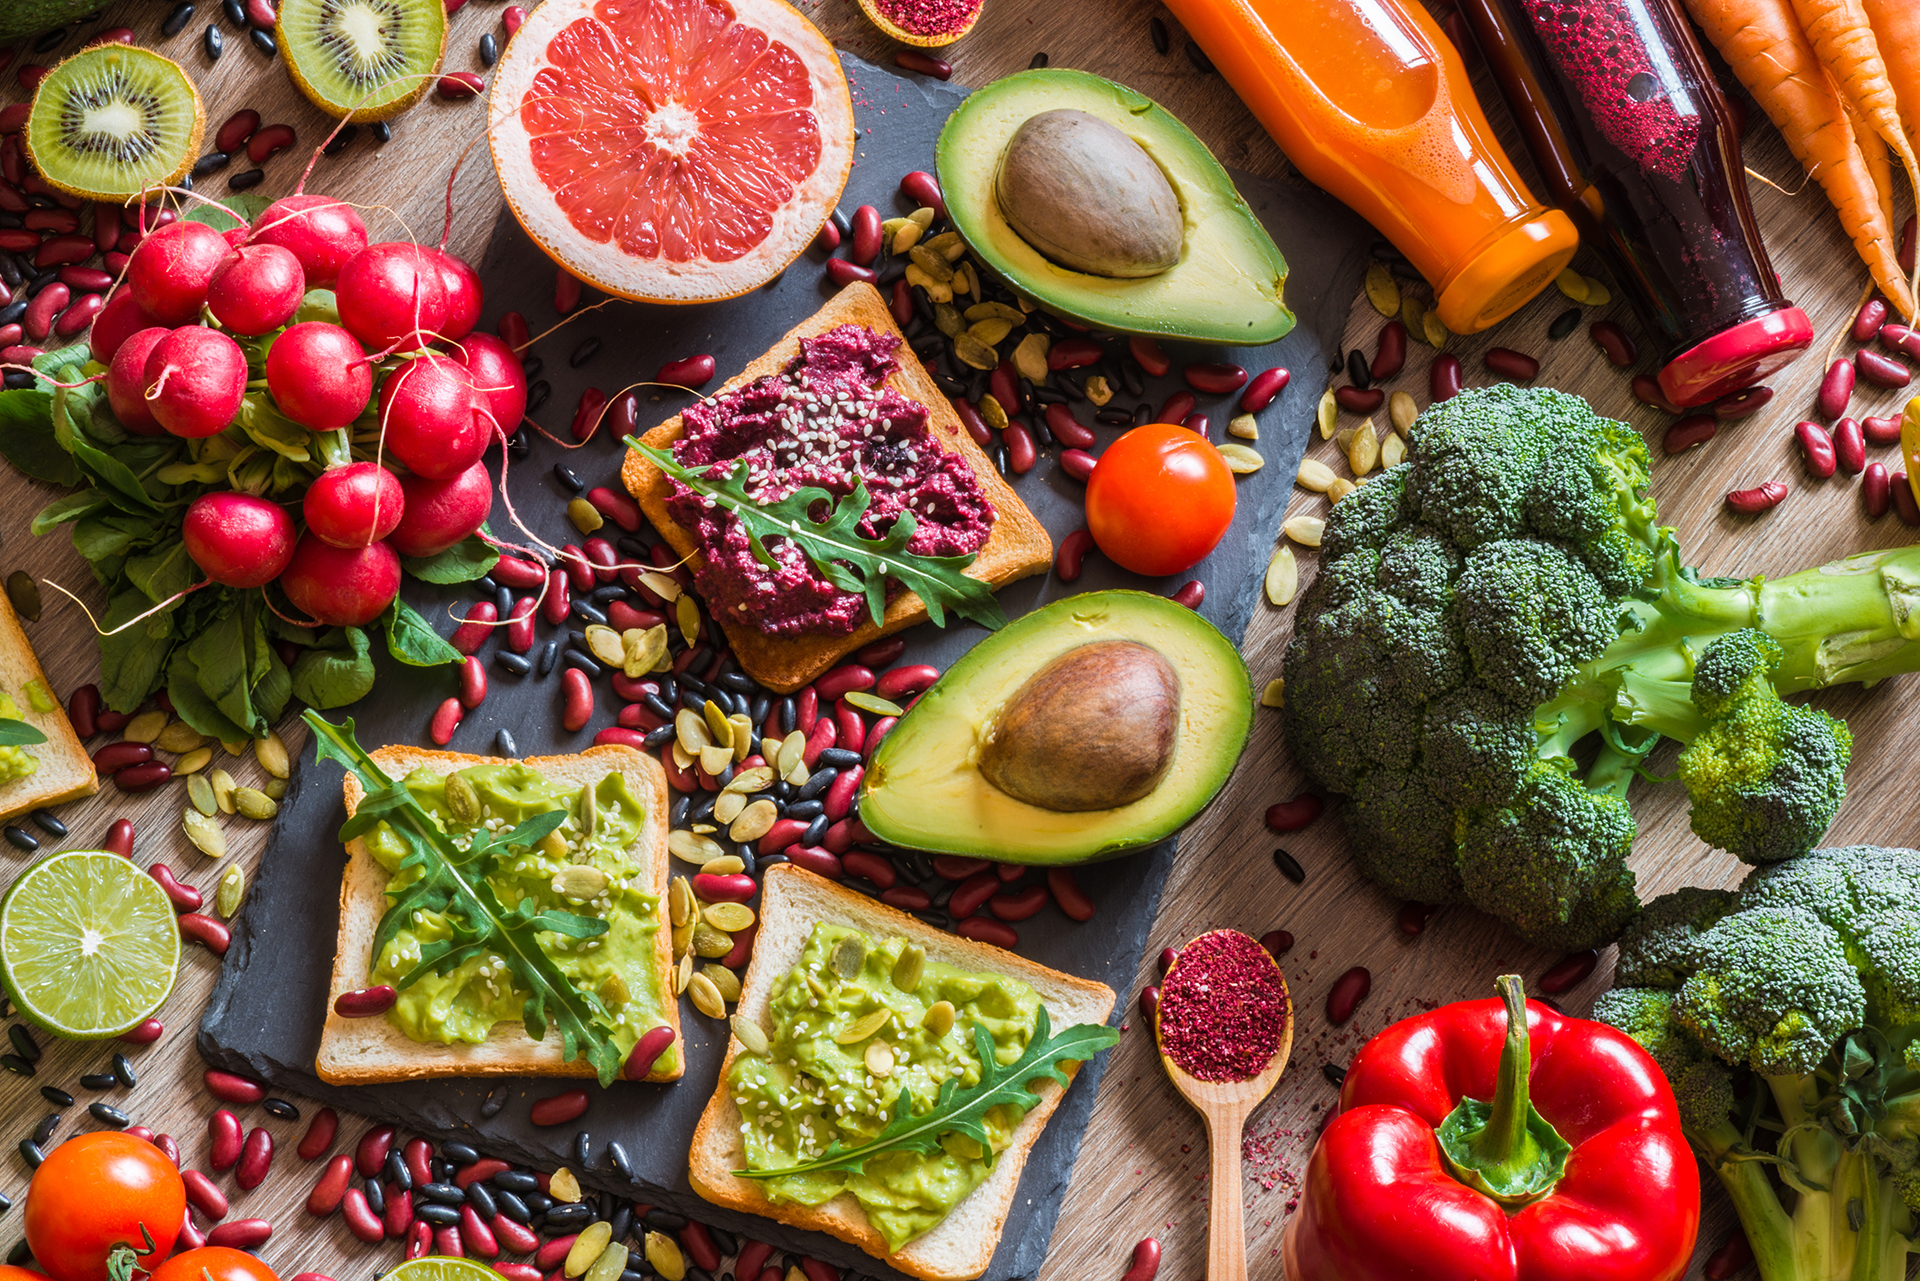 Frutas y verduras constituyen la base de la pirámide nutricional (Shutterstock)